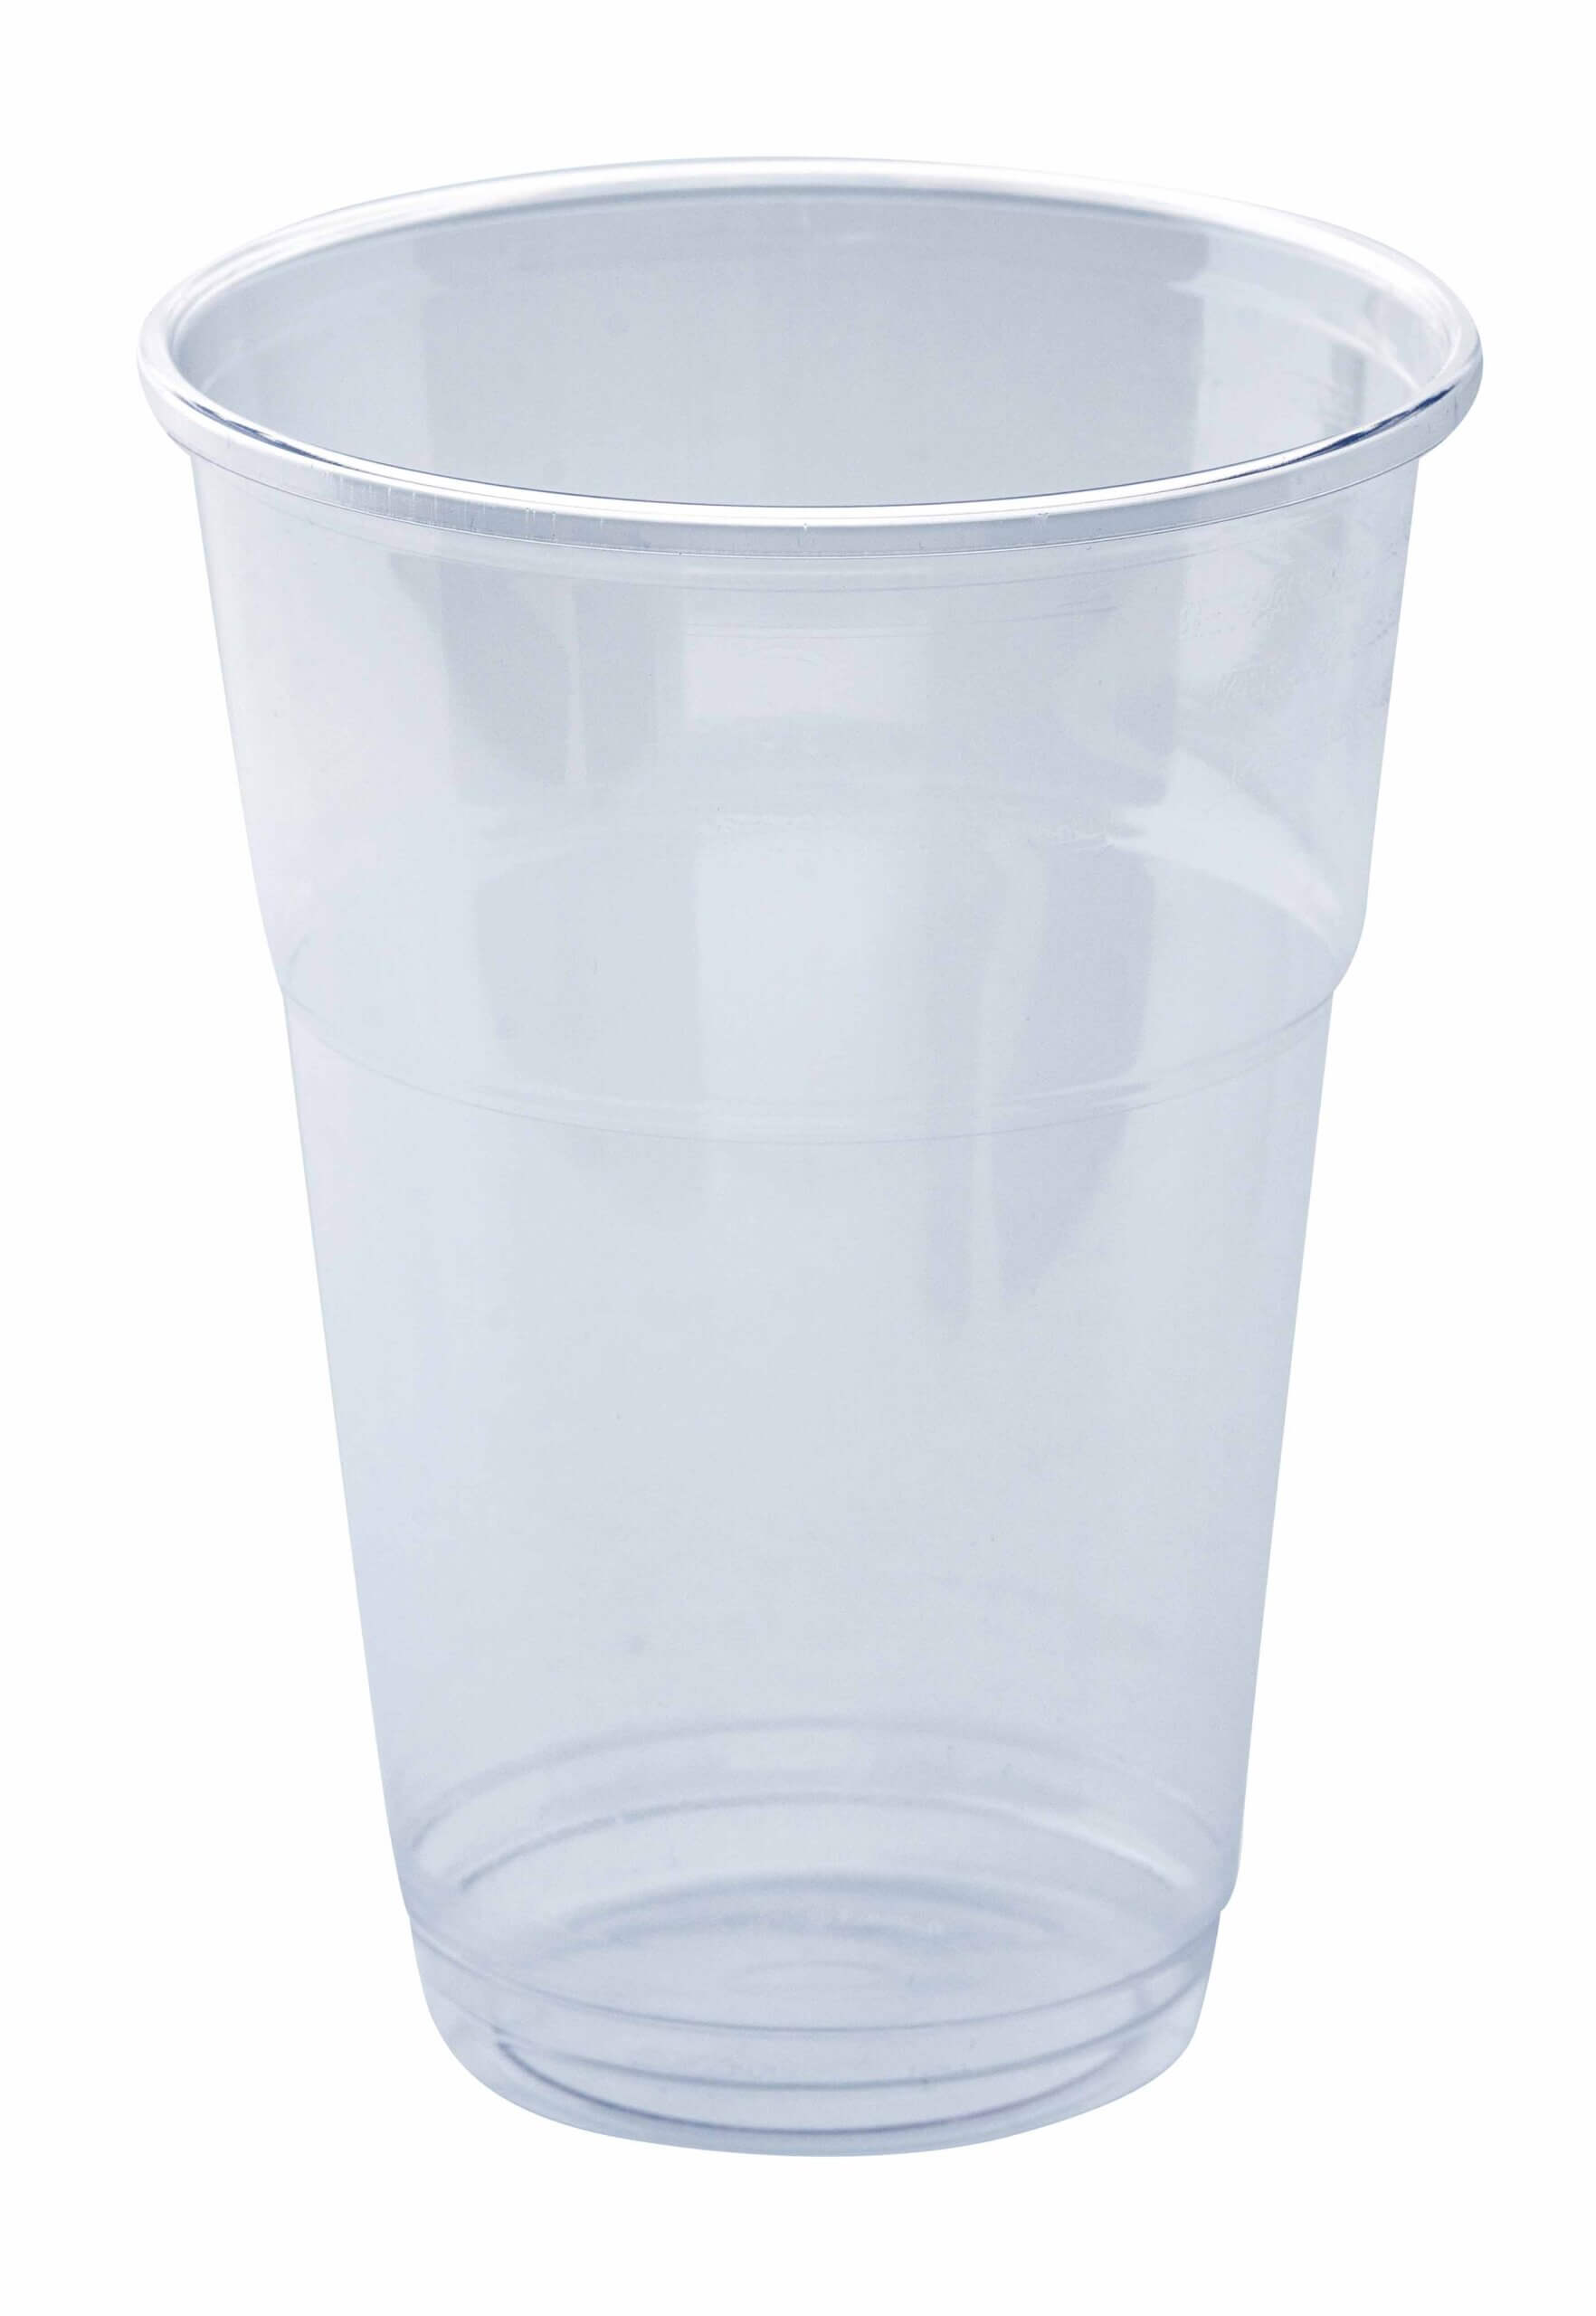 Bicchieri biodegradabili e compostabili 400-565 cc per bevande fredde –  pacco da 50 pezzi – Ditta Amore Raffaele s.n.c.